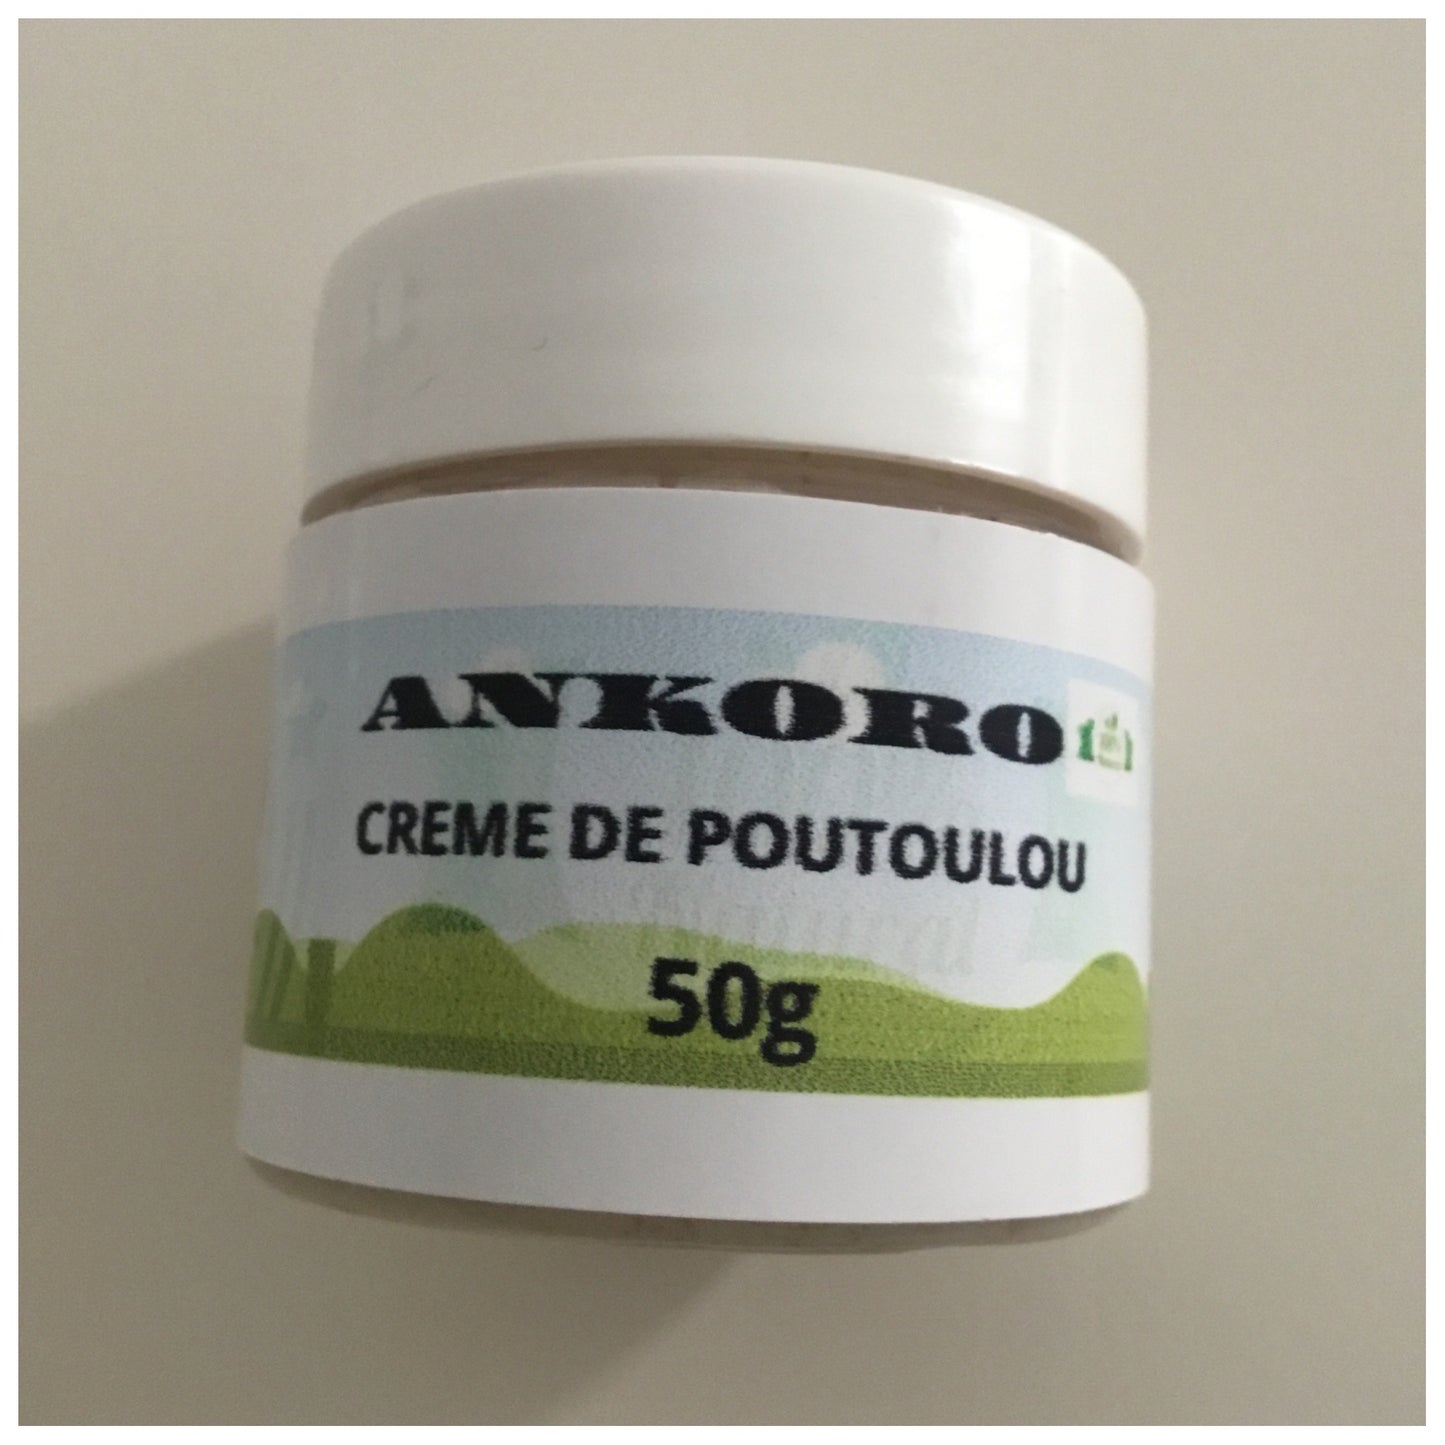 Poutoulou Ankora Crème